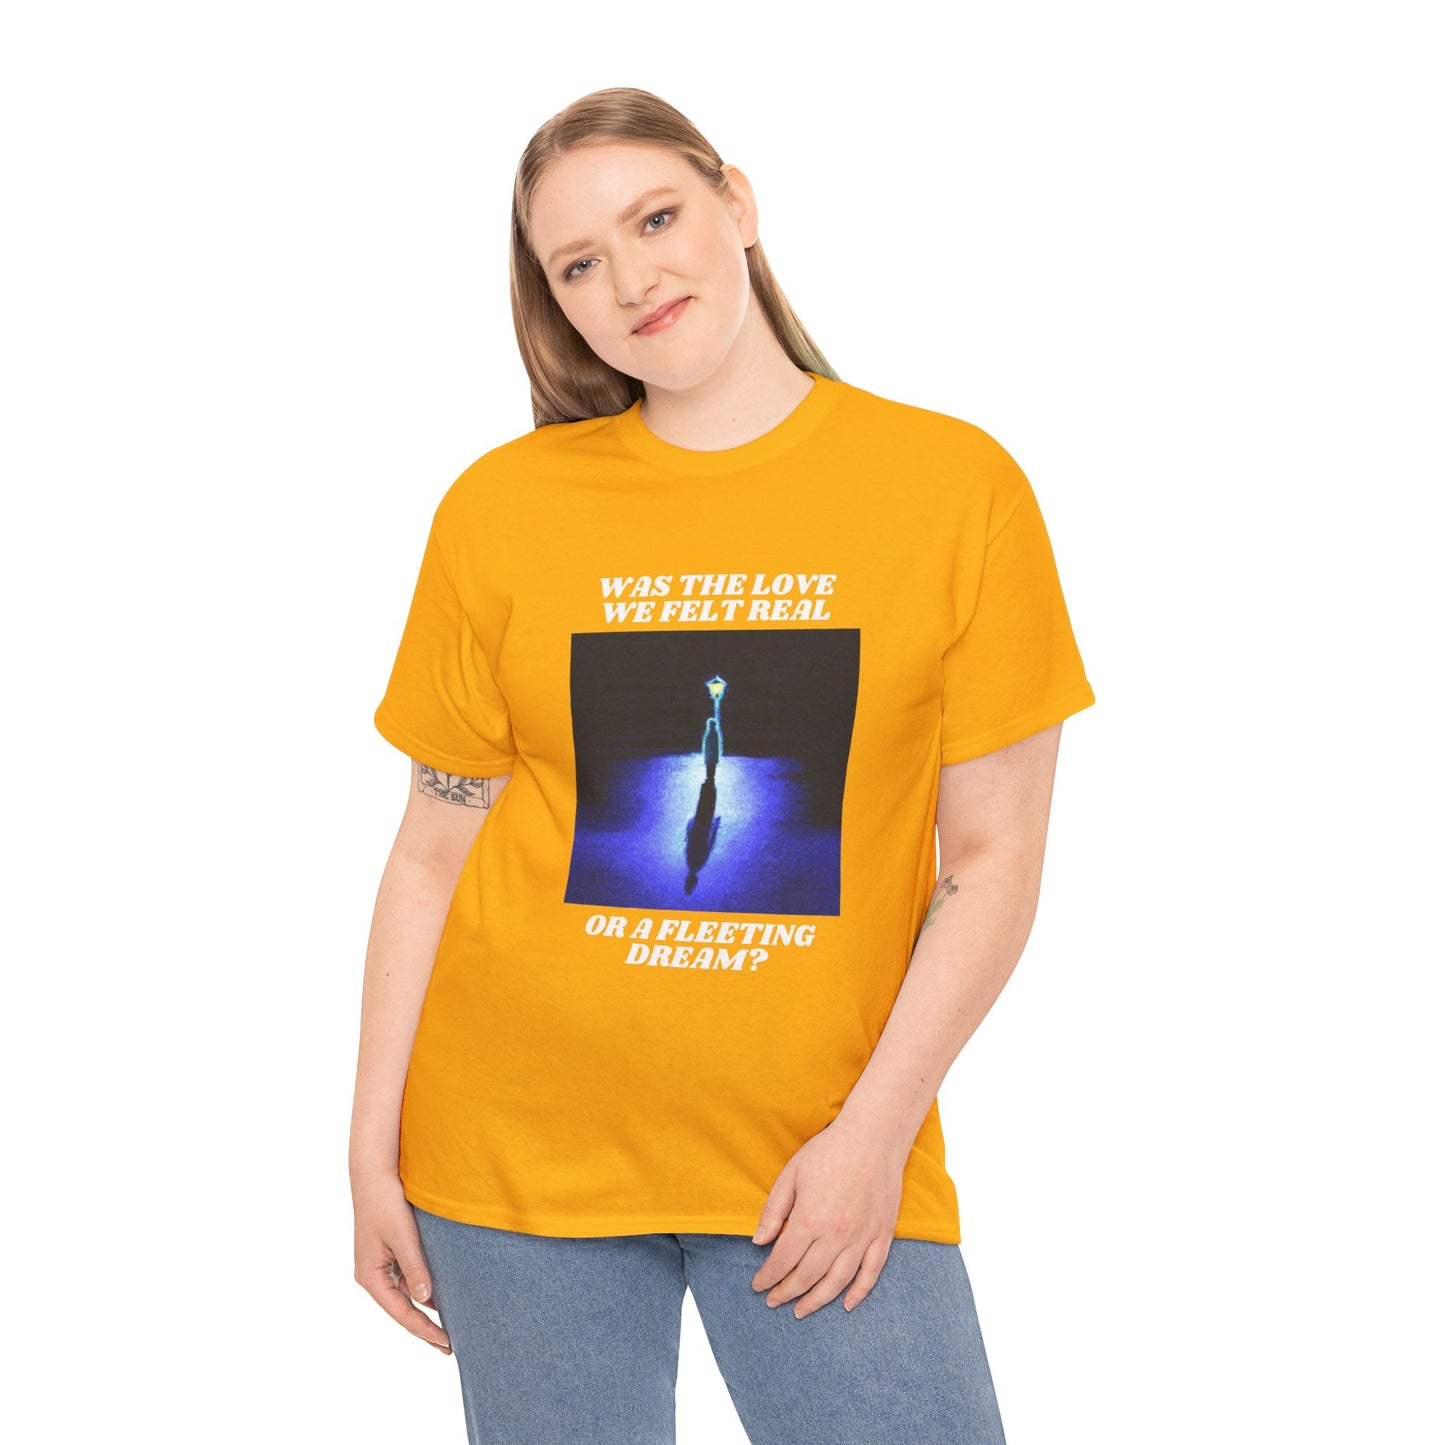 Sueño fugaz - Camiseta (solo diseño frontal)